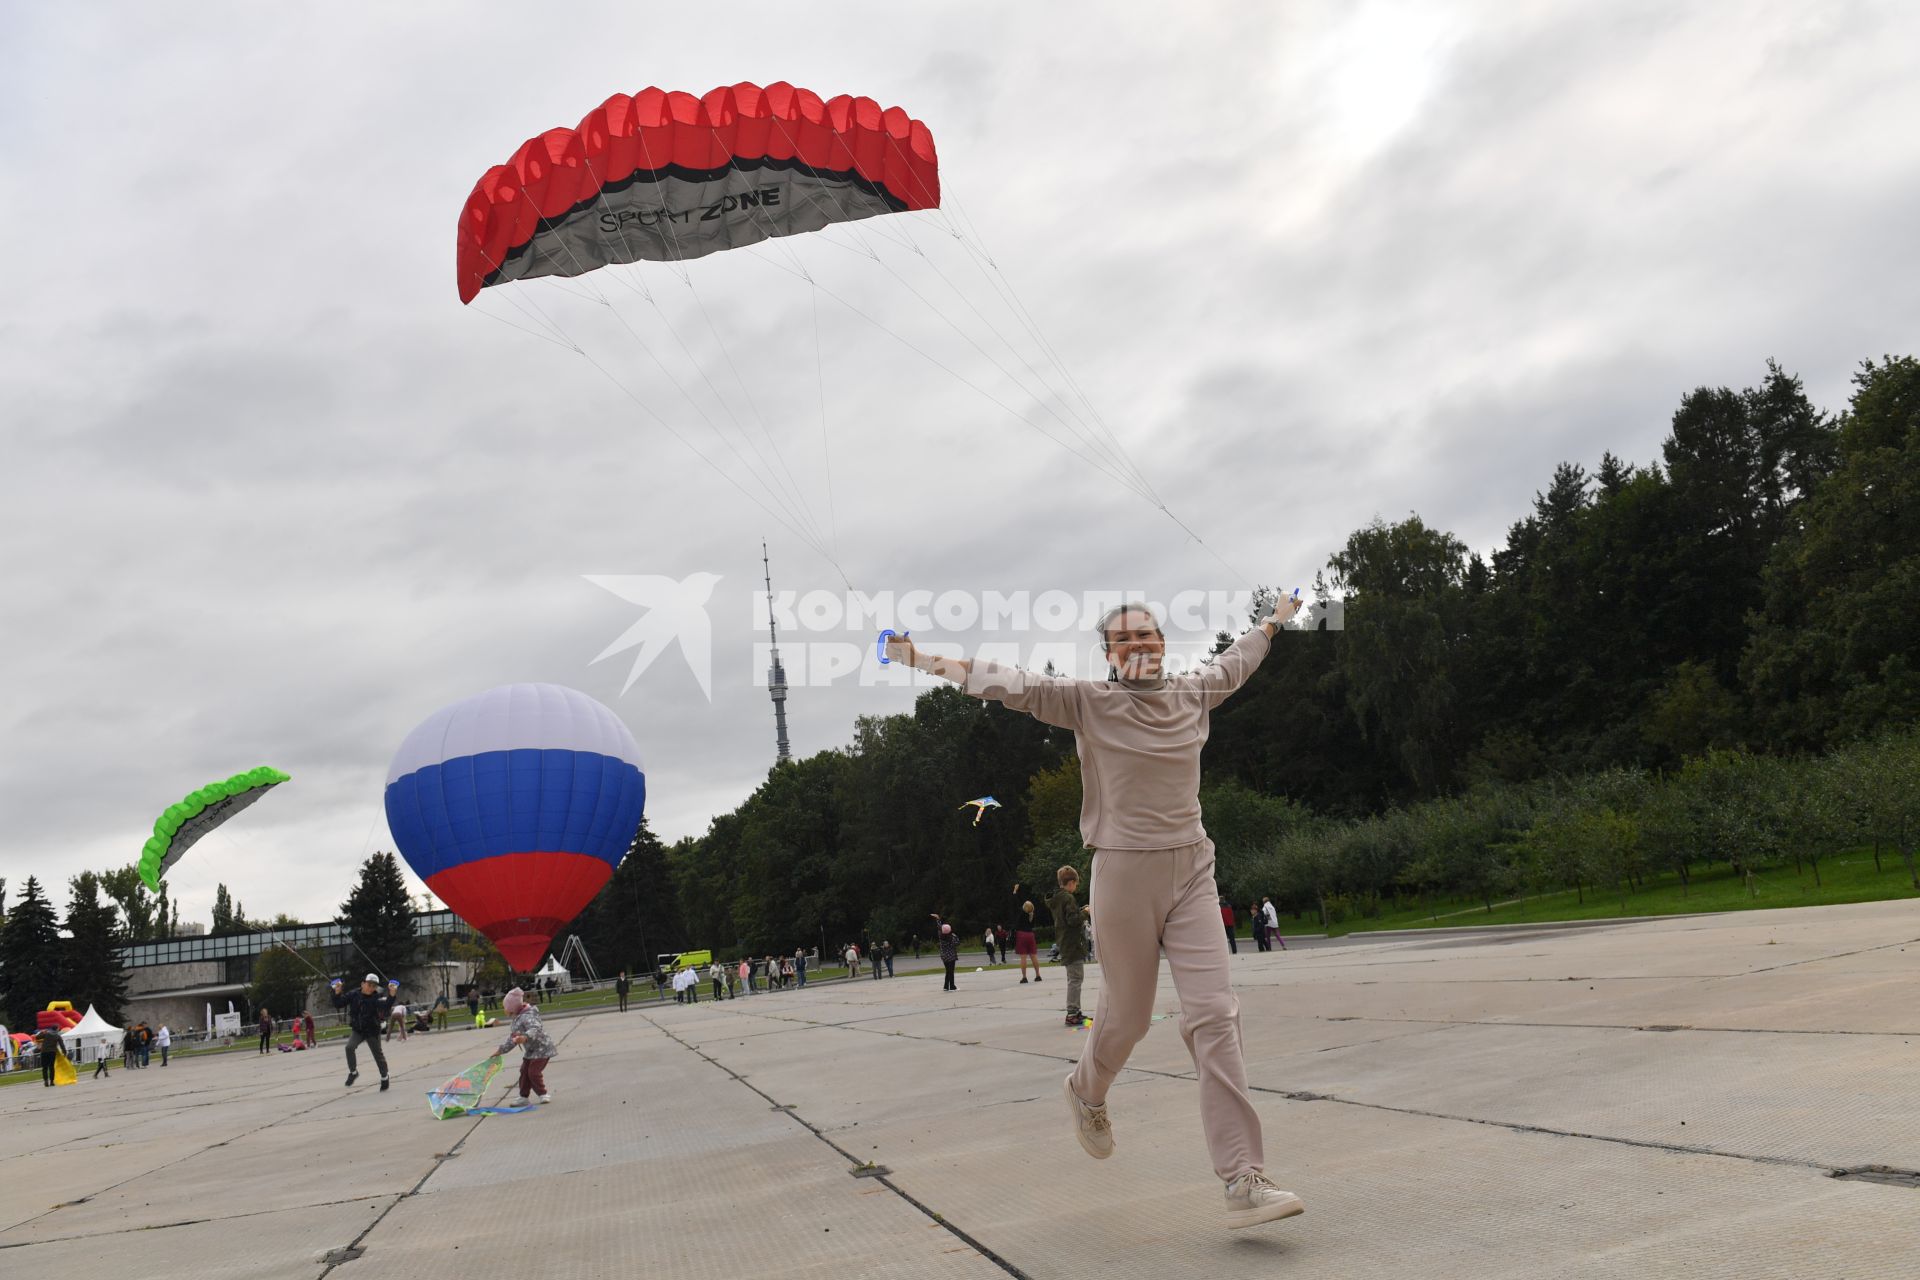 Москва.   Празднование Дня города Москвы на ВДНХ. Мужчина запускает воздушного змея.